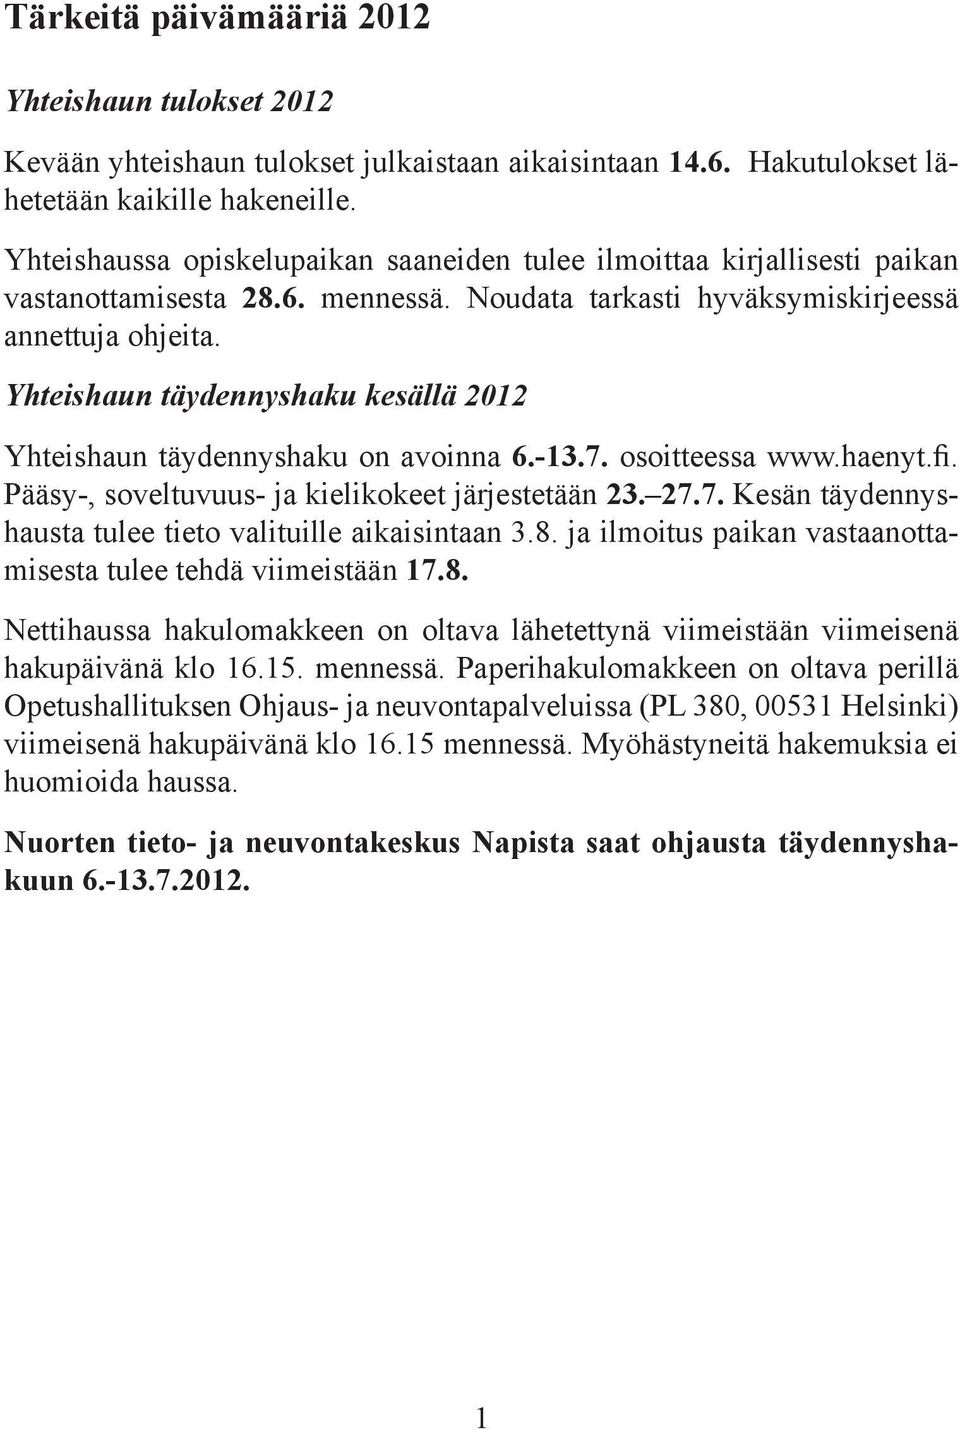 Yhteishaun täydennyshaku kesällä 2012 Yhteishaun täydennyshaku on avoinna 6.-13.7. osoitteessa www.haenyt.fi. Pääsy-, soveltuvuus- ja kielikokeet järjestetään 23. 27.7. Kesän täydennyshausta tulee tieto valituille aikaisintaan 3.